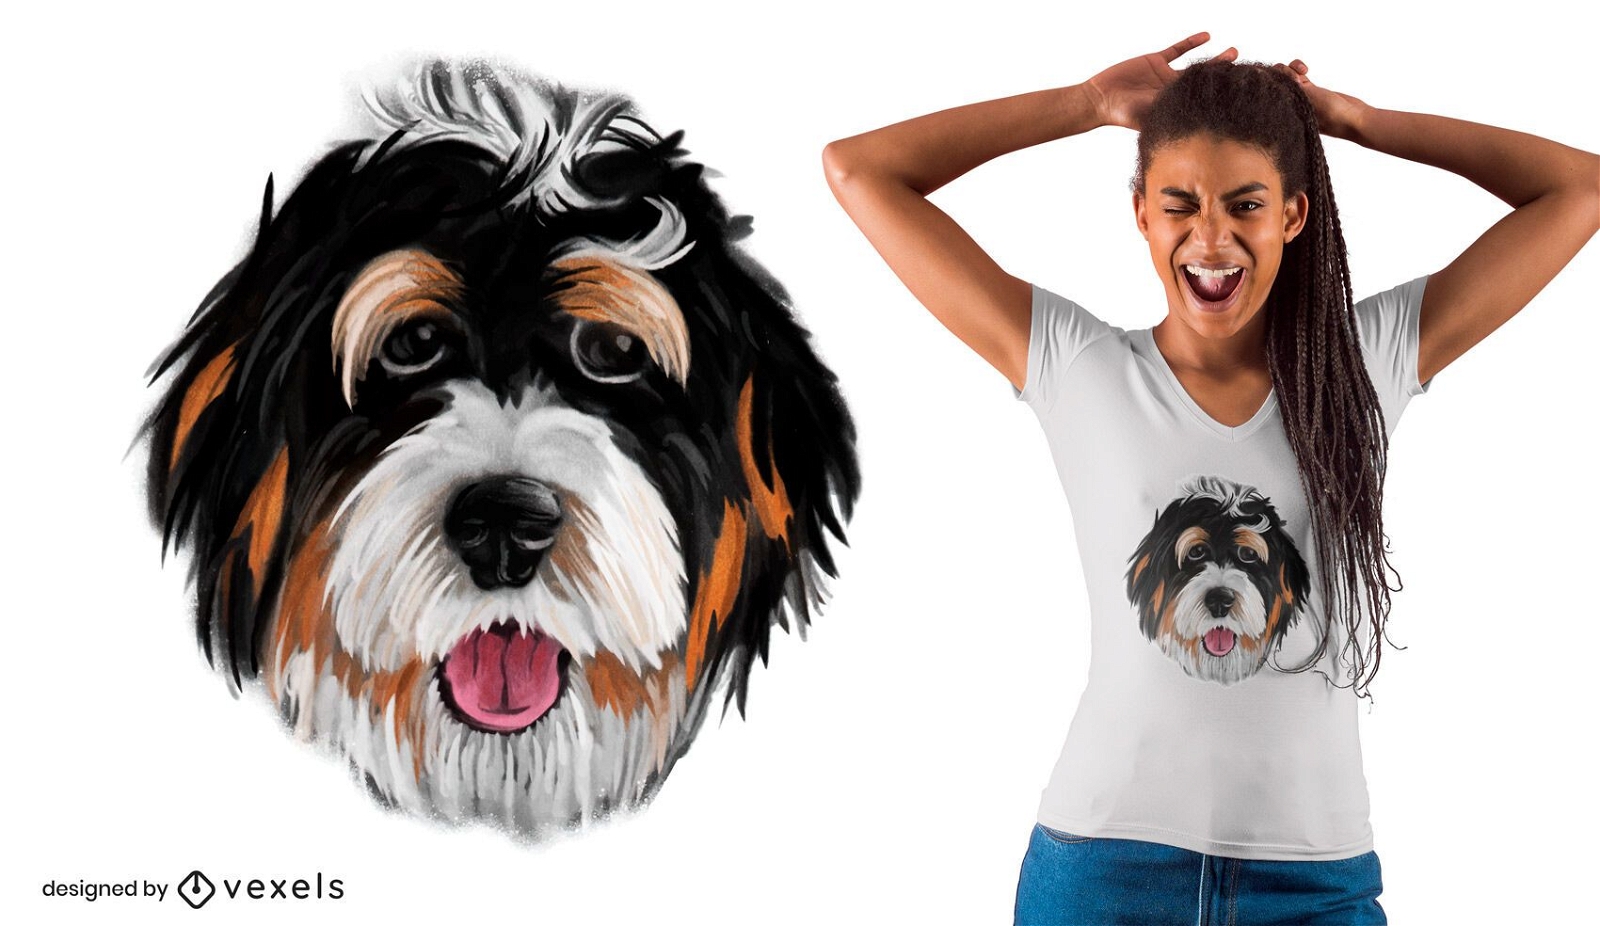 Dise?o de camiseta realista con cara de perro.